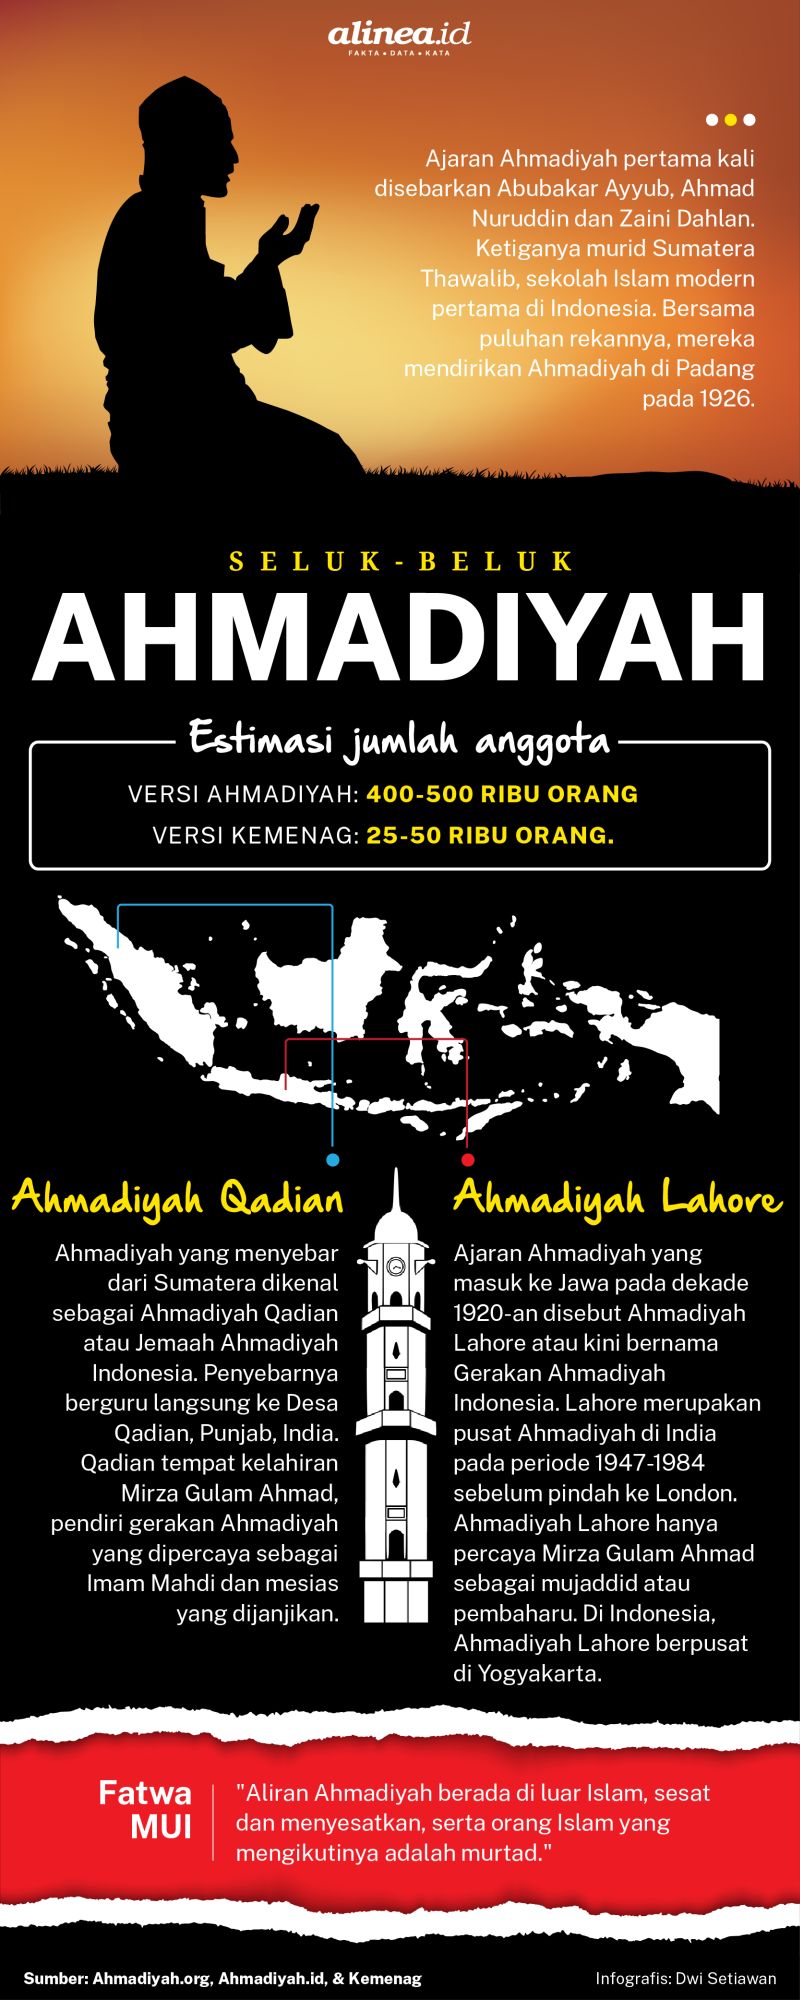 Ahmadiyah ajaran Ahmadiyyah di